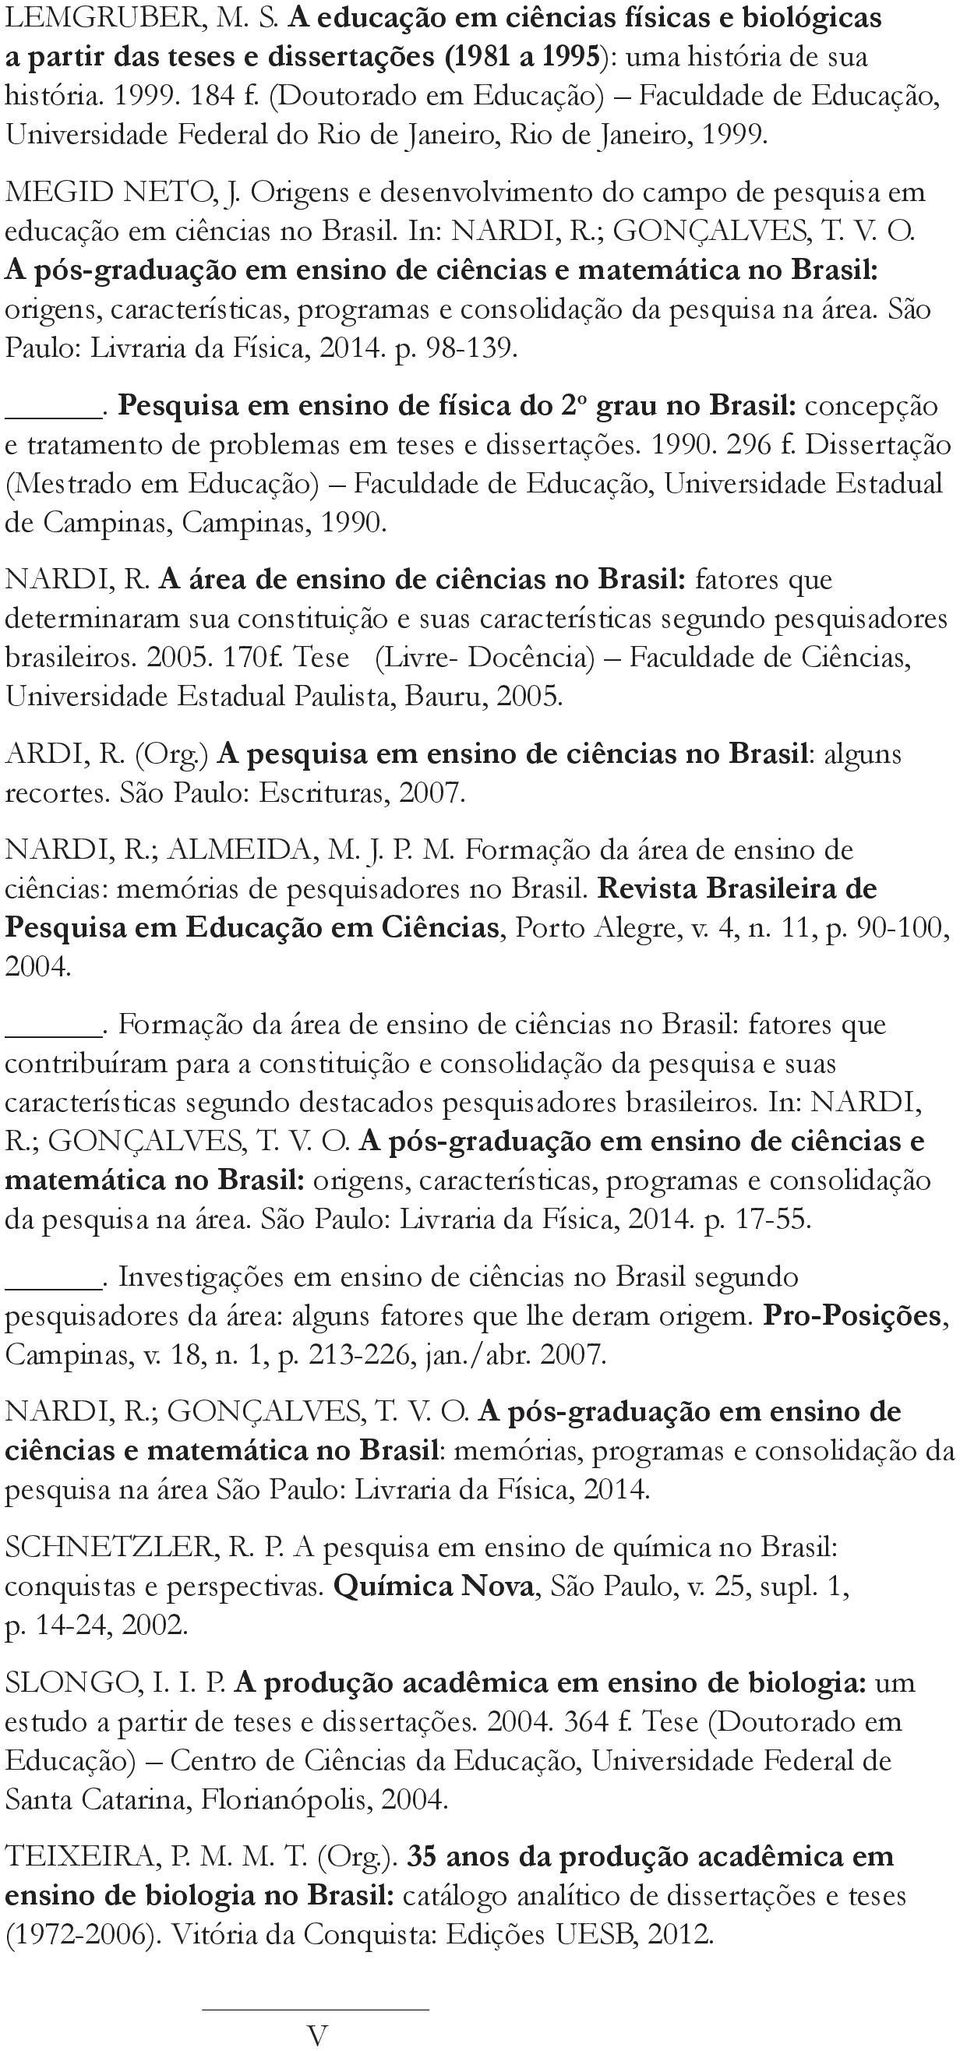 Origens e desenvolvimento do campo de pesquisa em educação em ciências no Brasil. In: NARDI, R.; GONÇALVES, T. V. O.